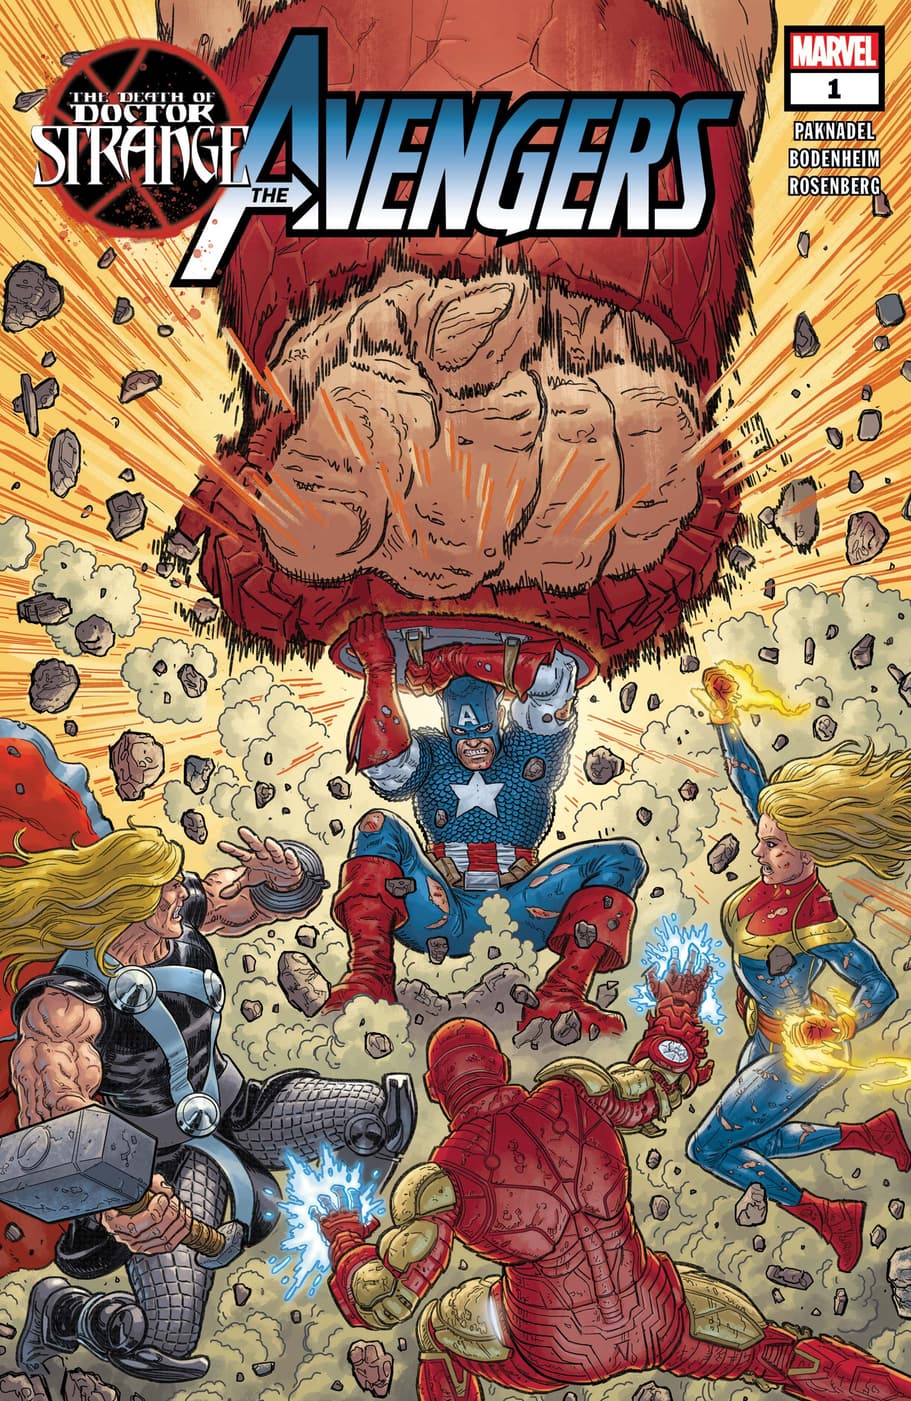 Captain America Avengers Gift Idea Poster Hulk Doctor Strange Wallpaper Avengers Spider Man Wall Decor Iron Man Comic Style